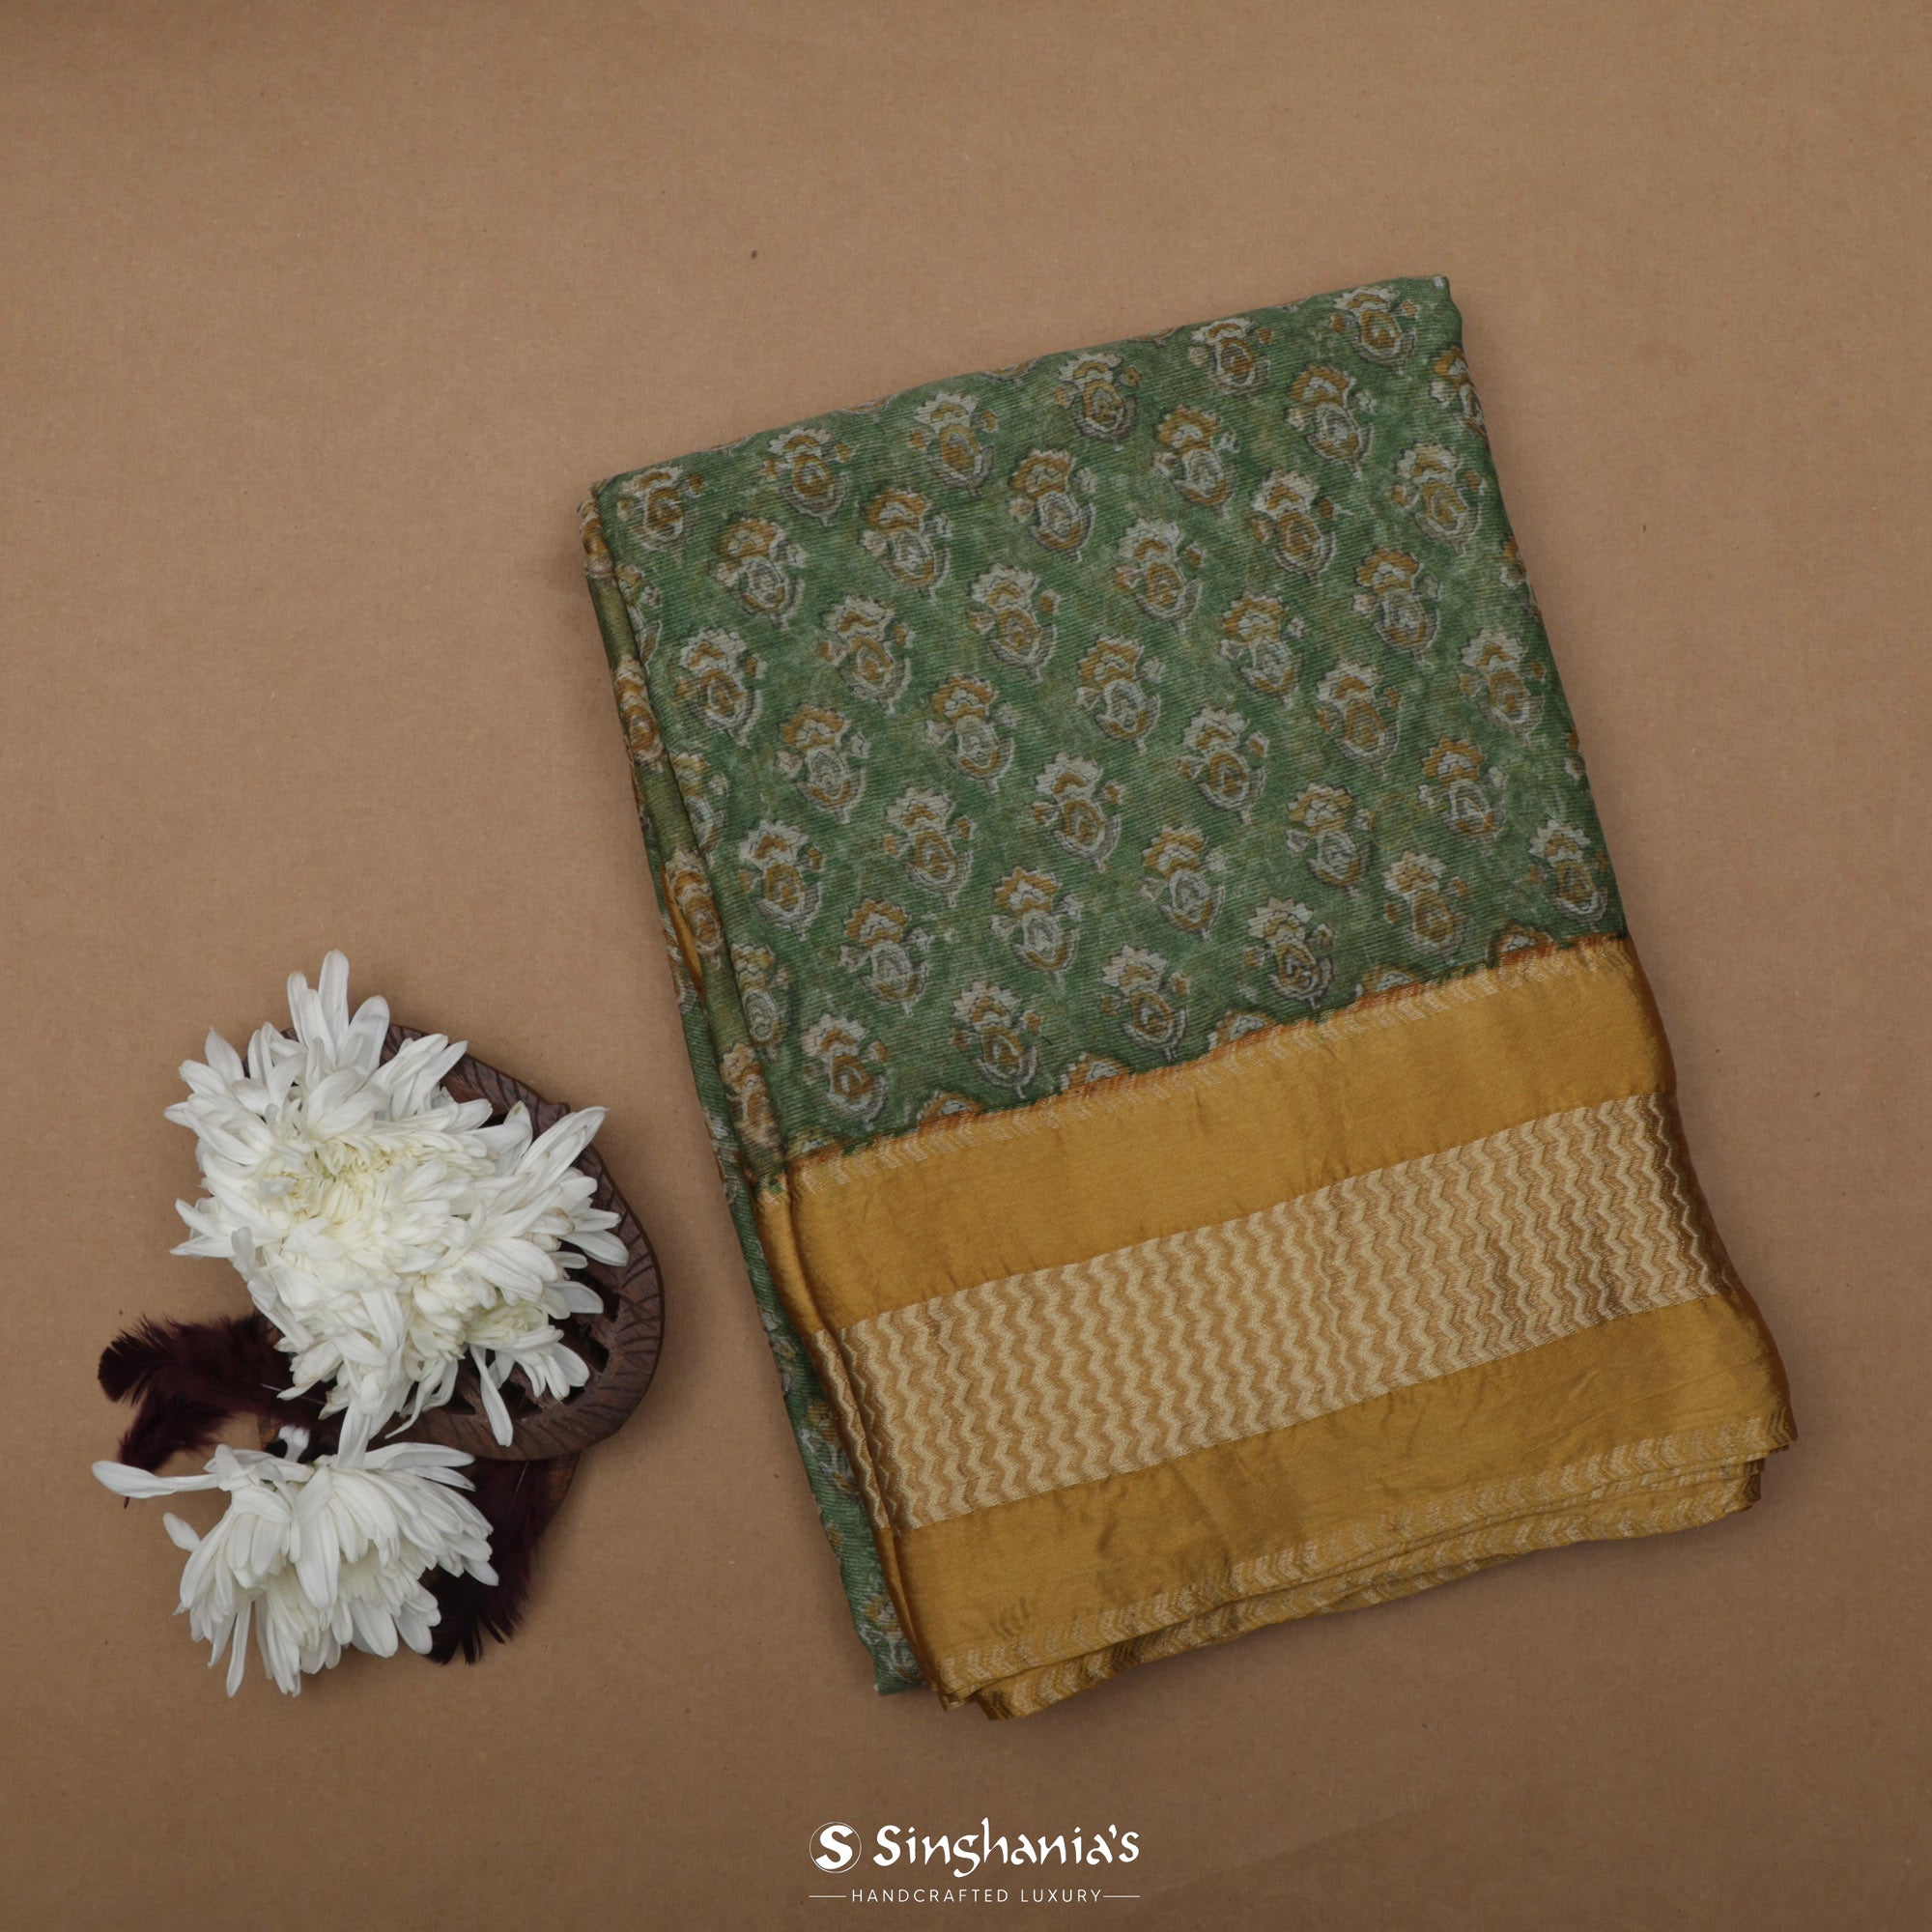 Hunter Green Printed Maheshwari Saree With Floral Motif Design